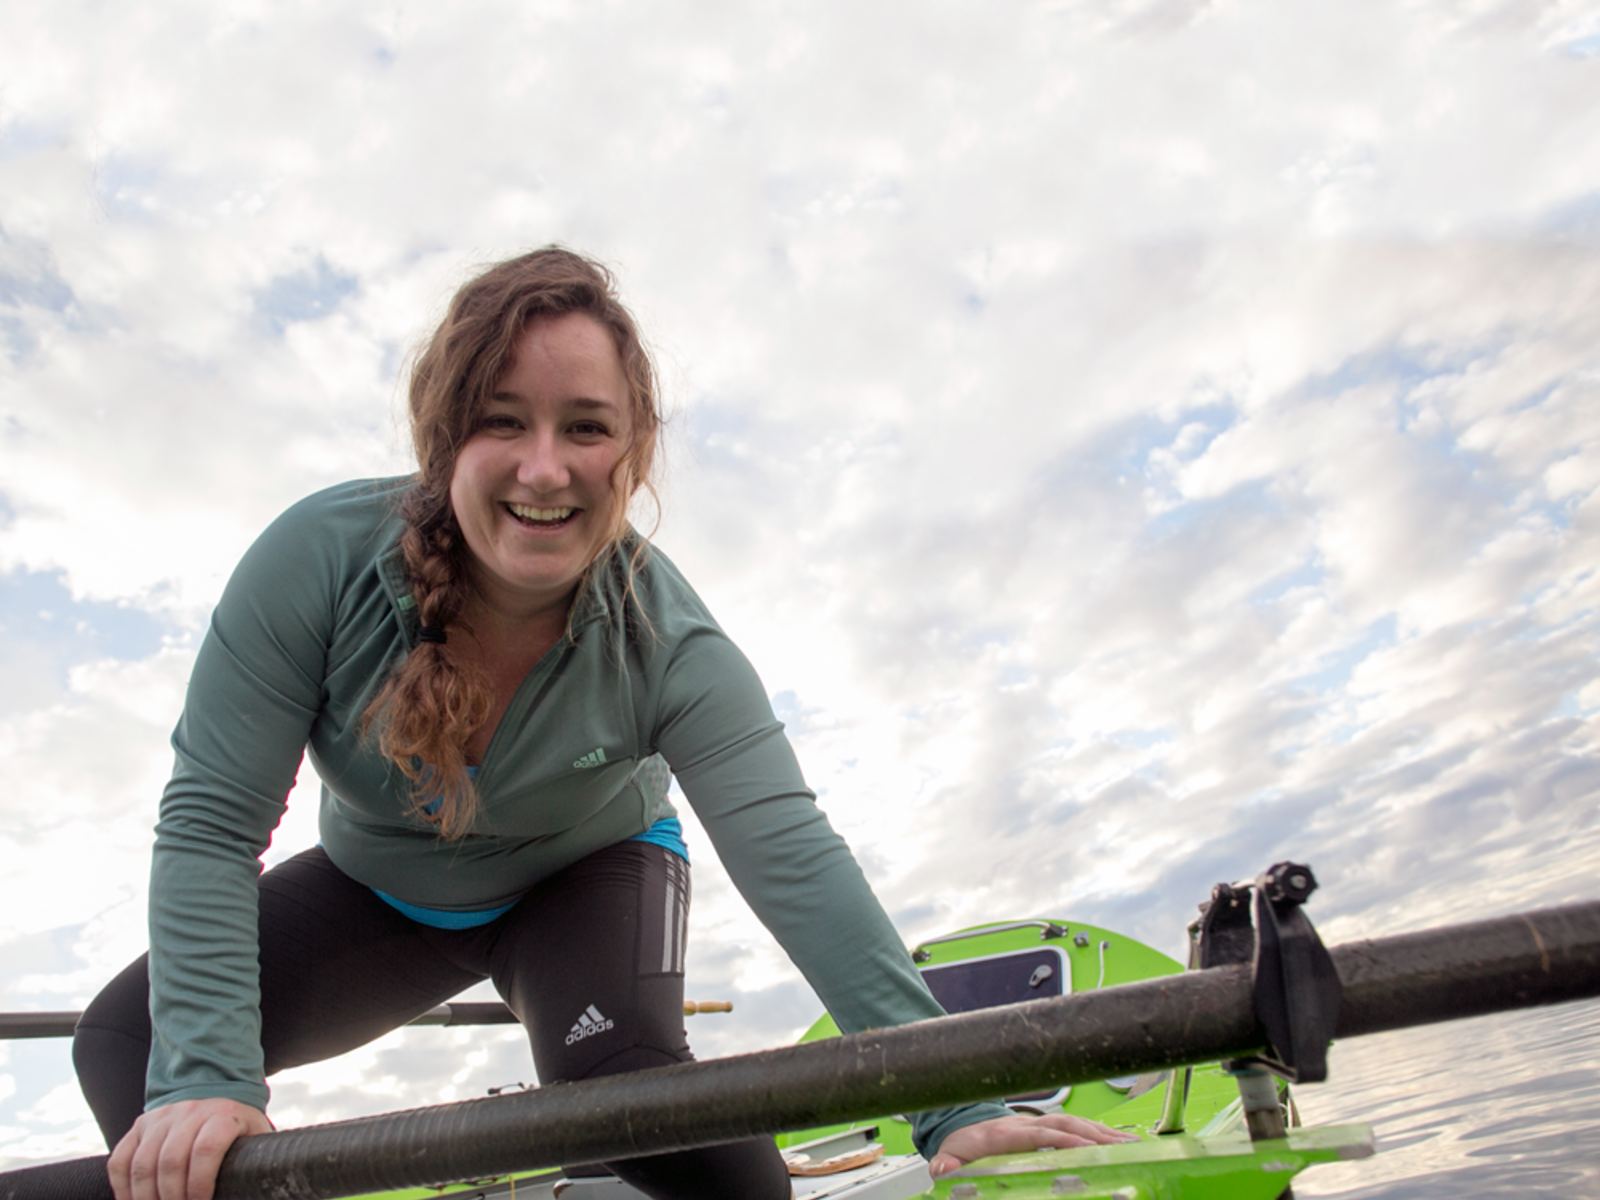 Sonya Baumstein takes a selfie on her rowboat.